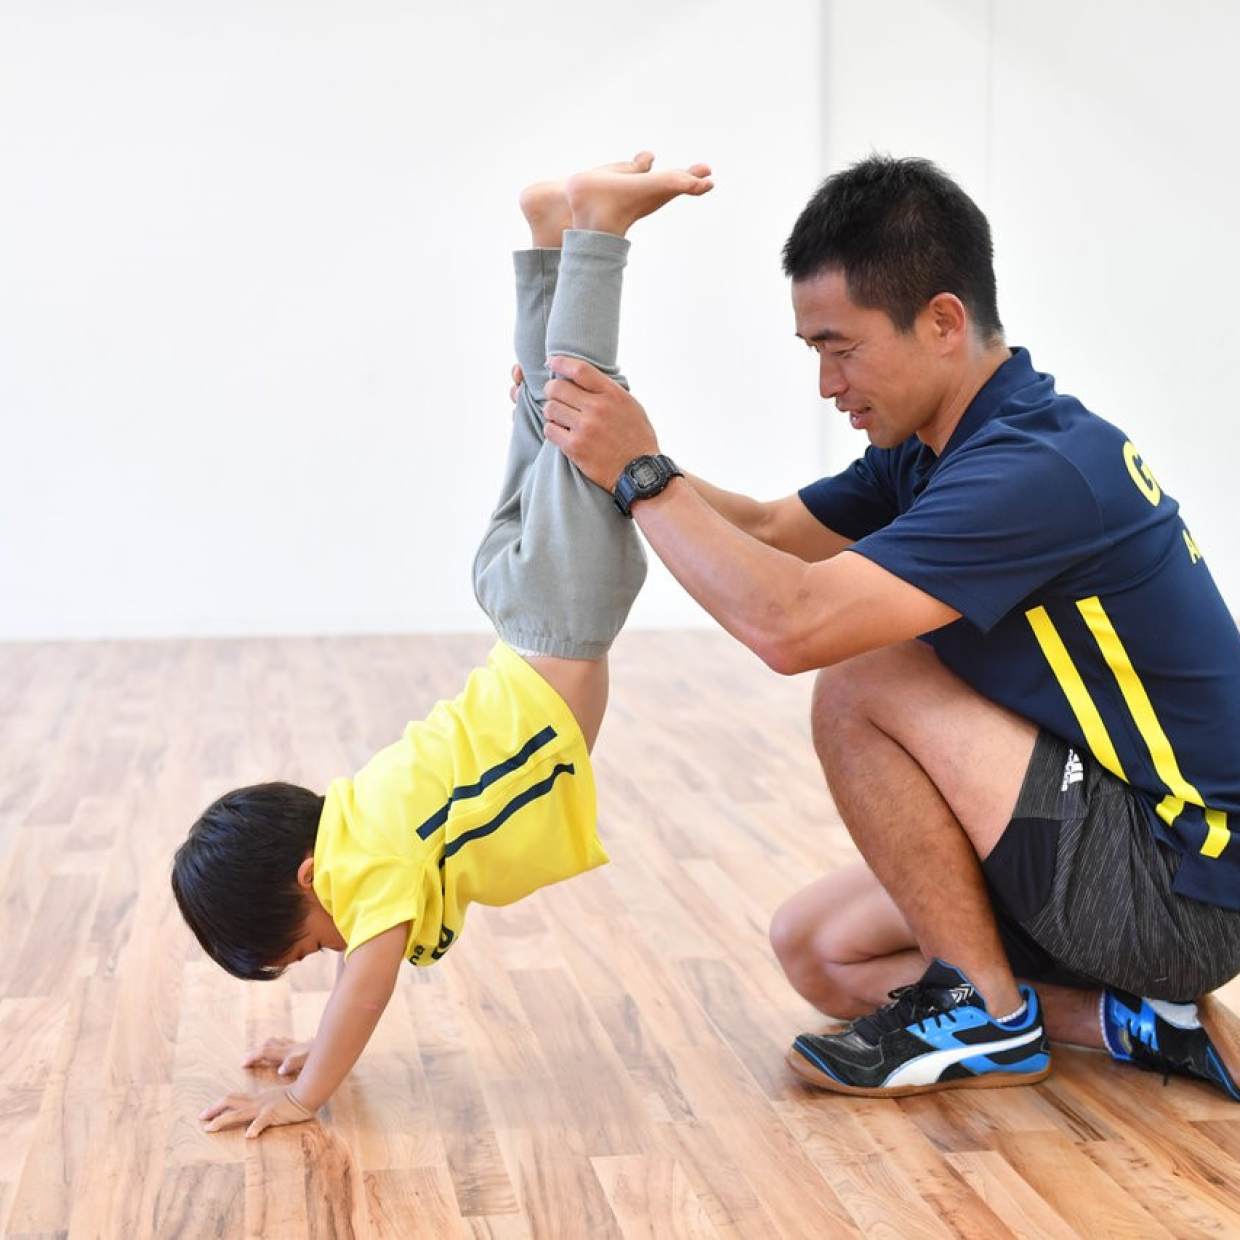  幼児体育のプロフェッショナルが教える「おうちで遊びながら体幹トレーニング」 